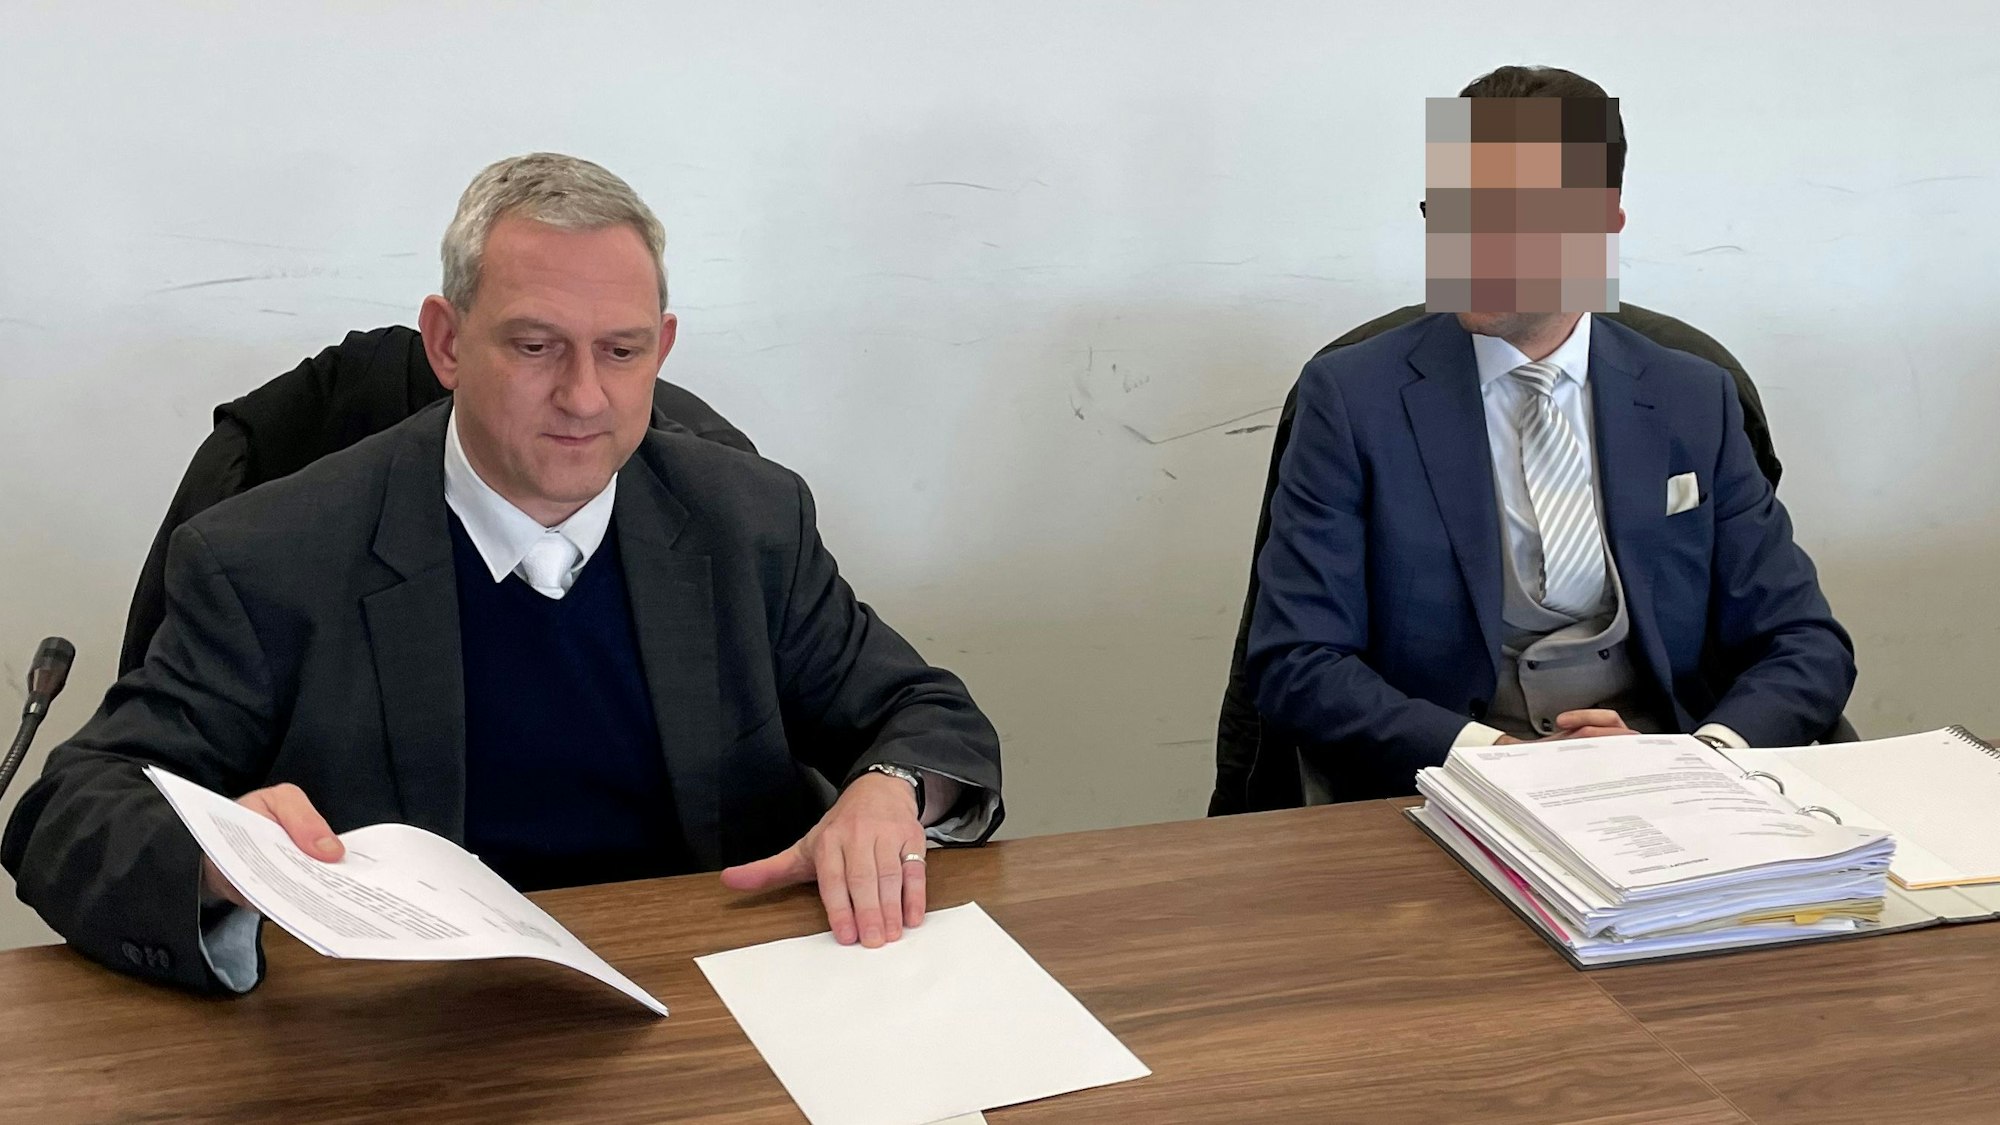 Der beschuldigte AfD-Politiker (r.) mit seinem Verteidiger im Landgericht Köln